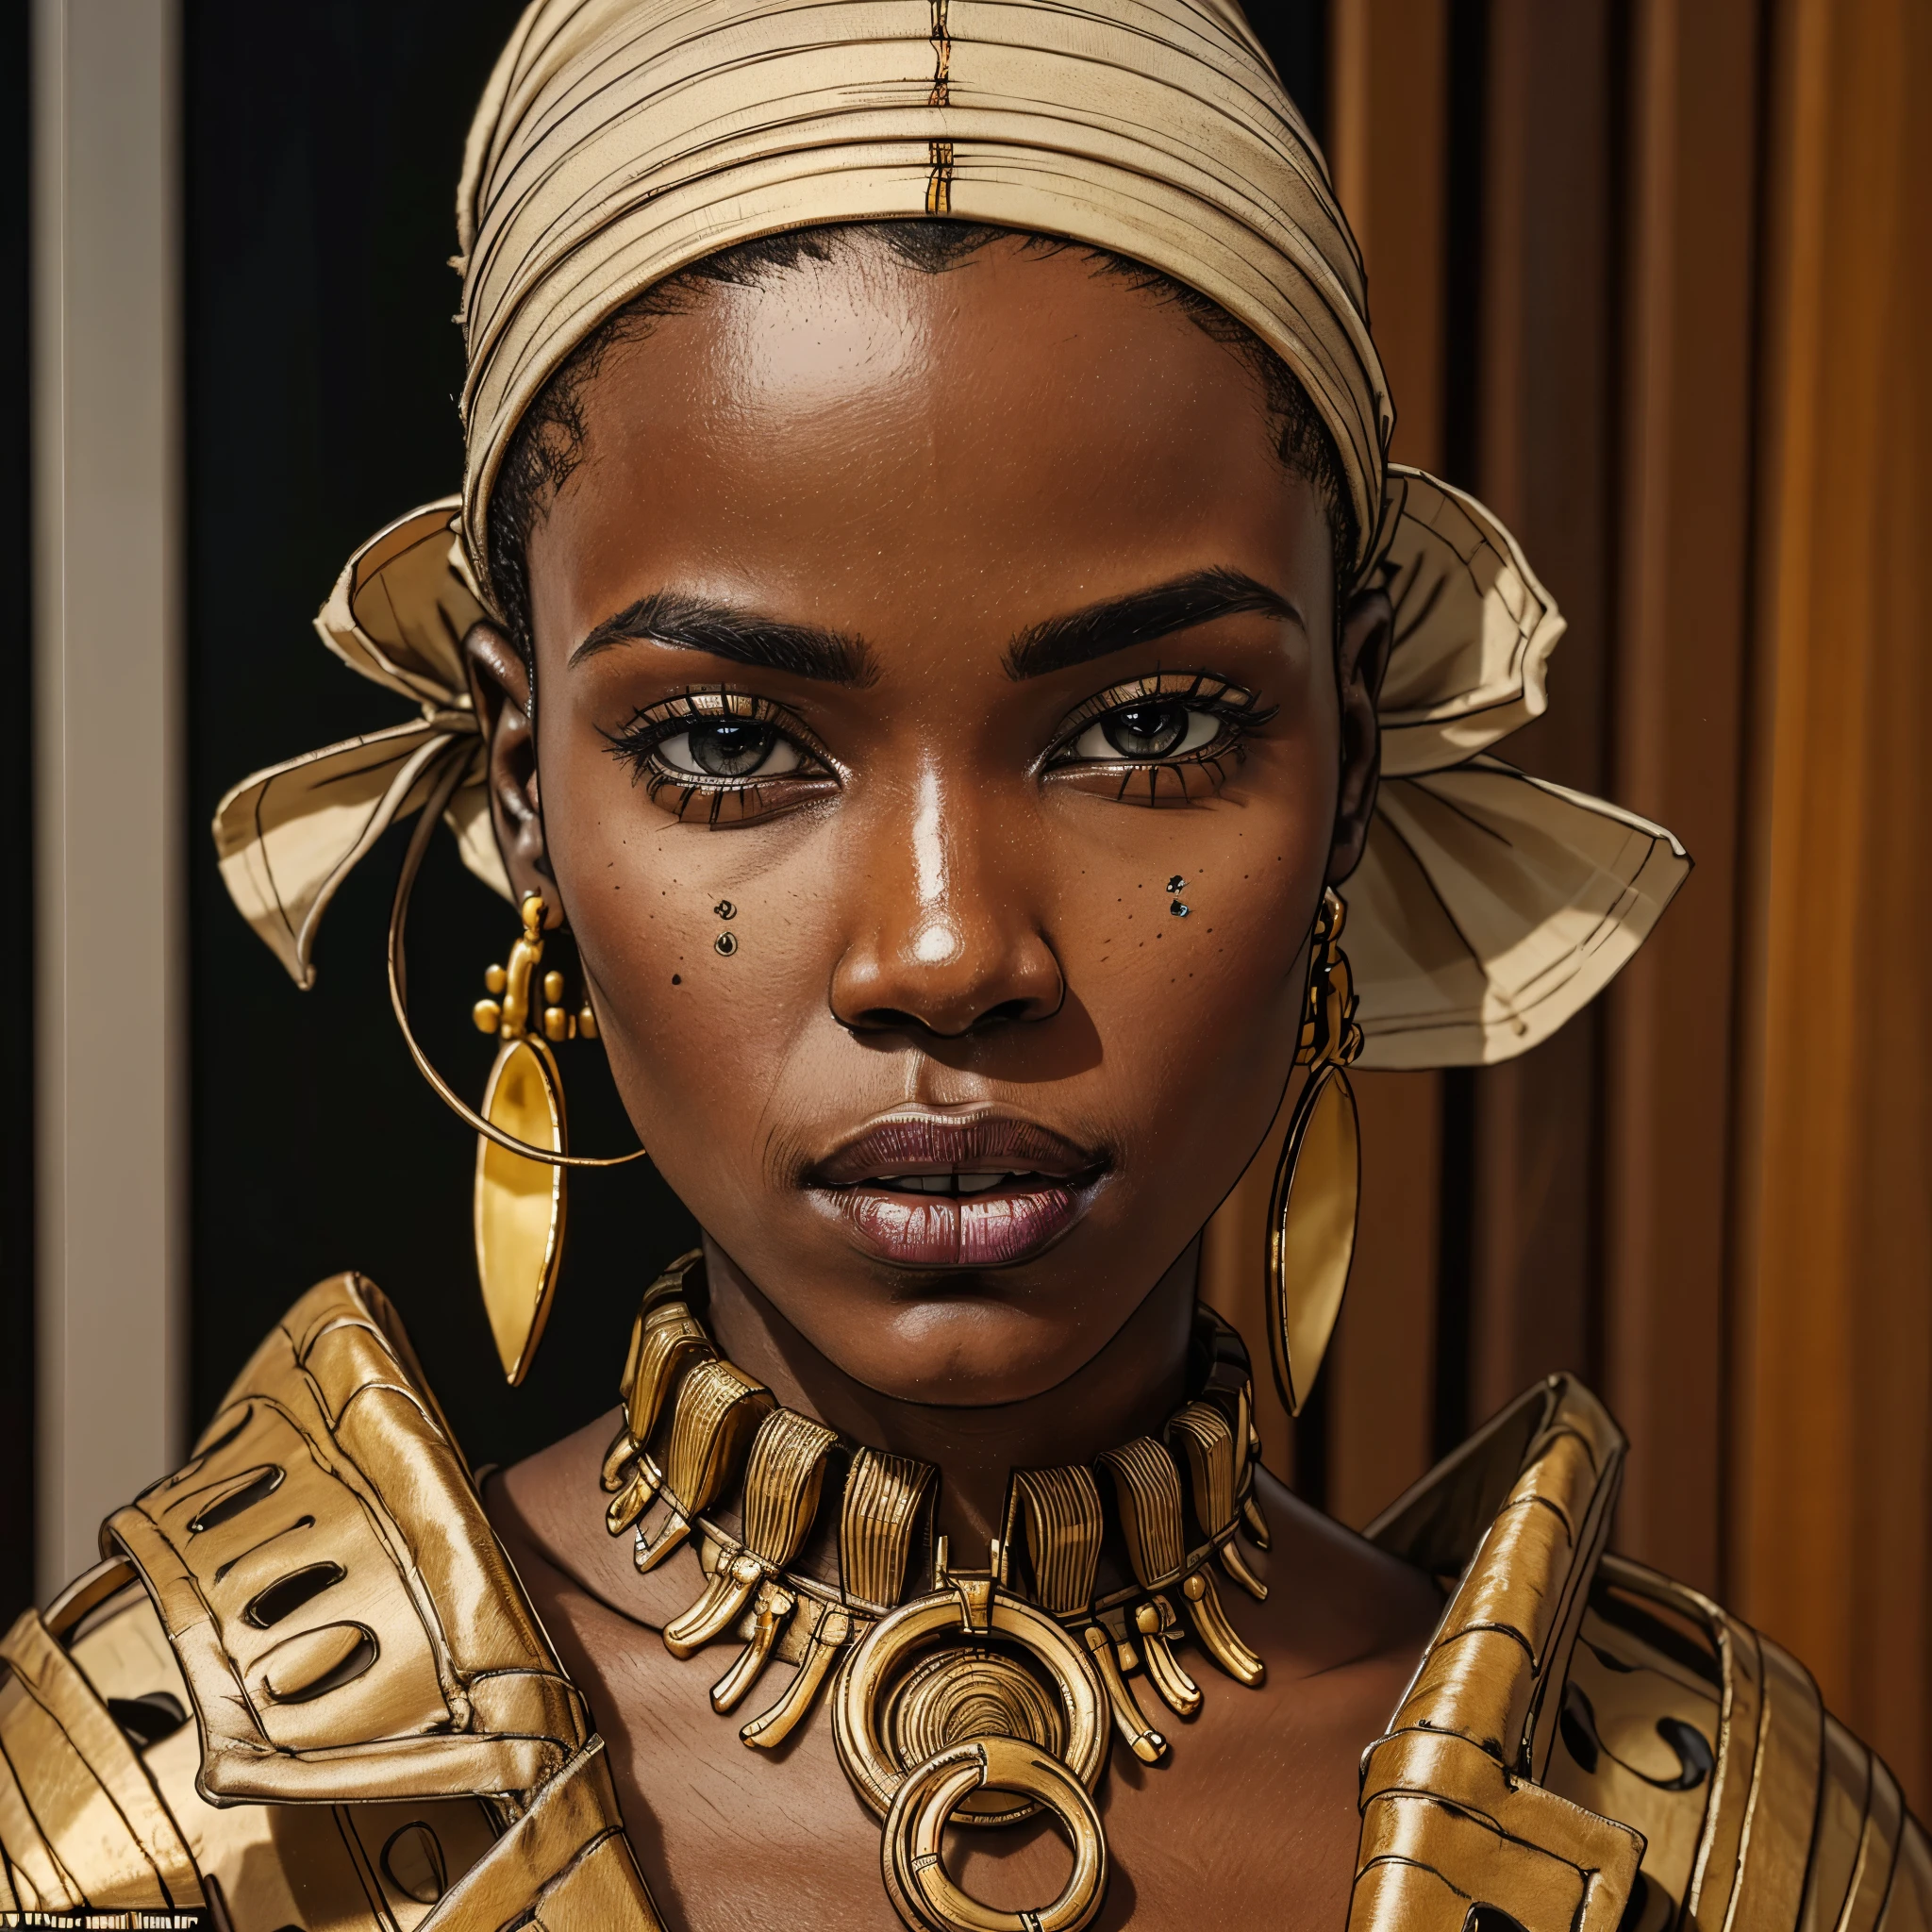 这张人工智能生成的图像生动展现了非洲时装模特的惊人特征, 她有着完美无瑕的黝黑皮肤, 凶狠的目光, 和精致的头巾, 多种多样等等. --v6 --s1000 --c20 --q5 --chaos100